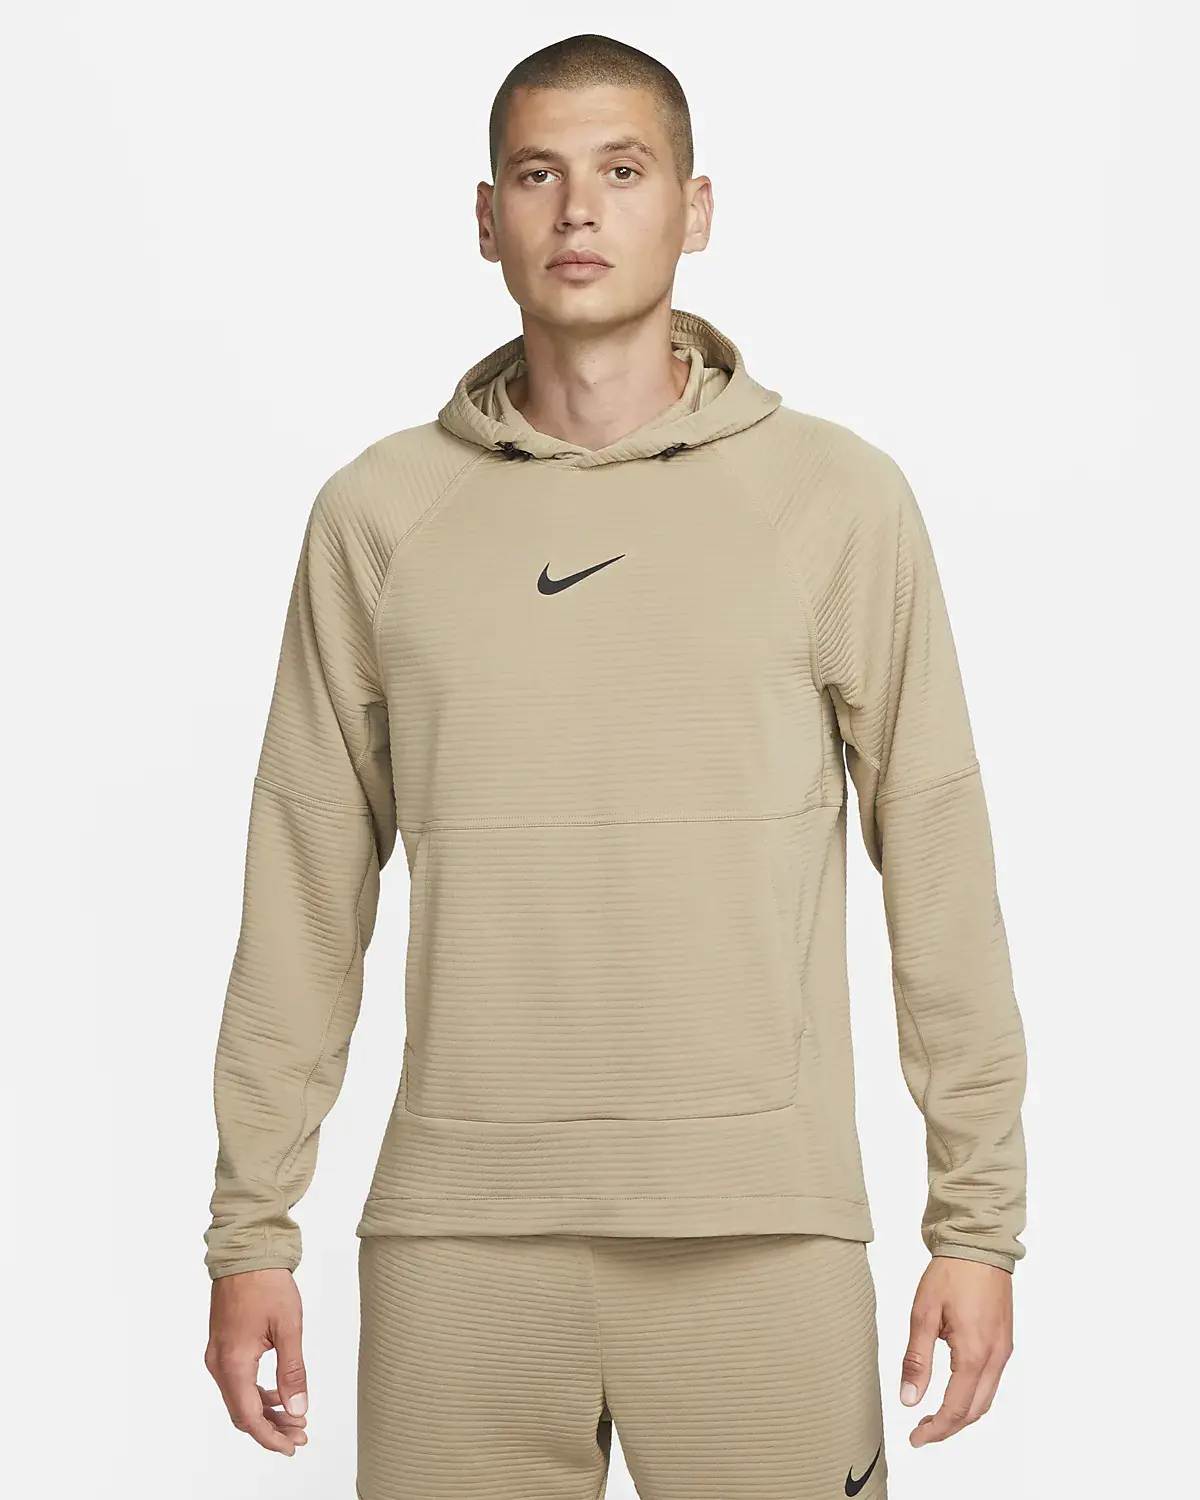 Nike SweatShirt. 1